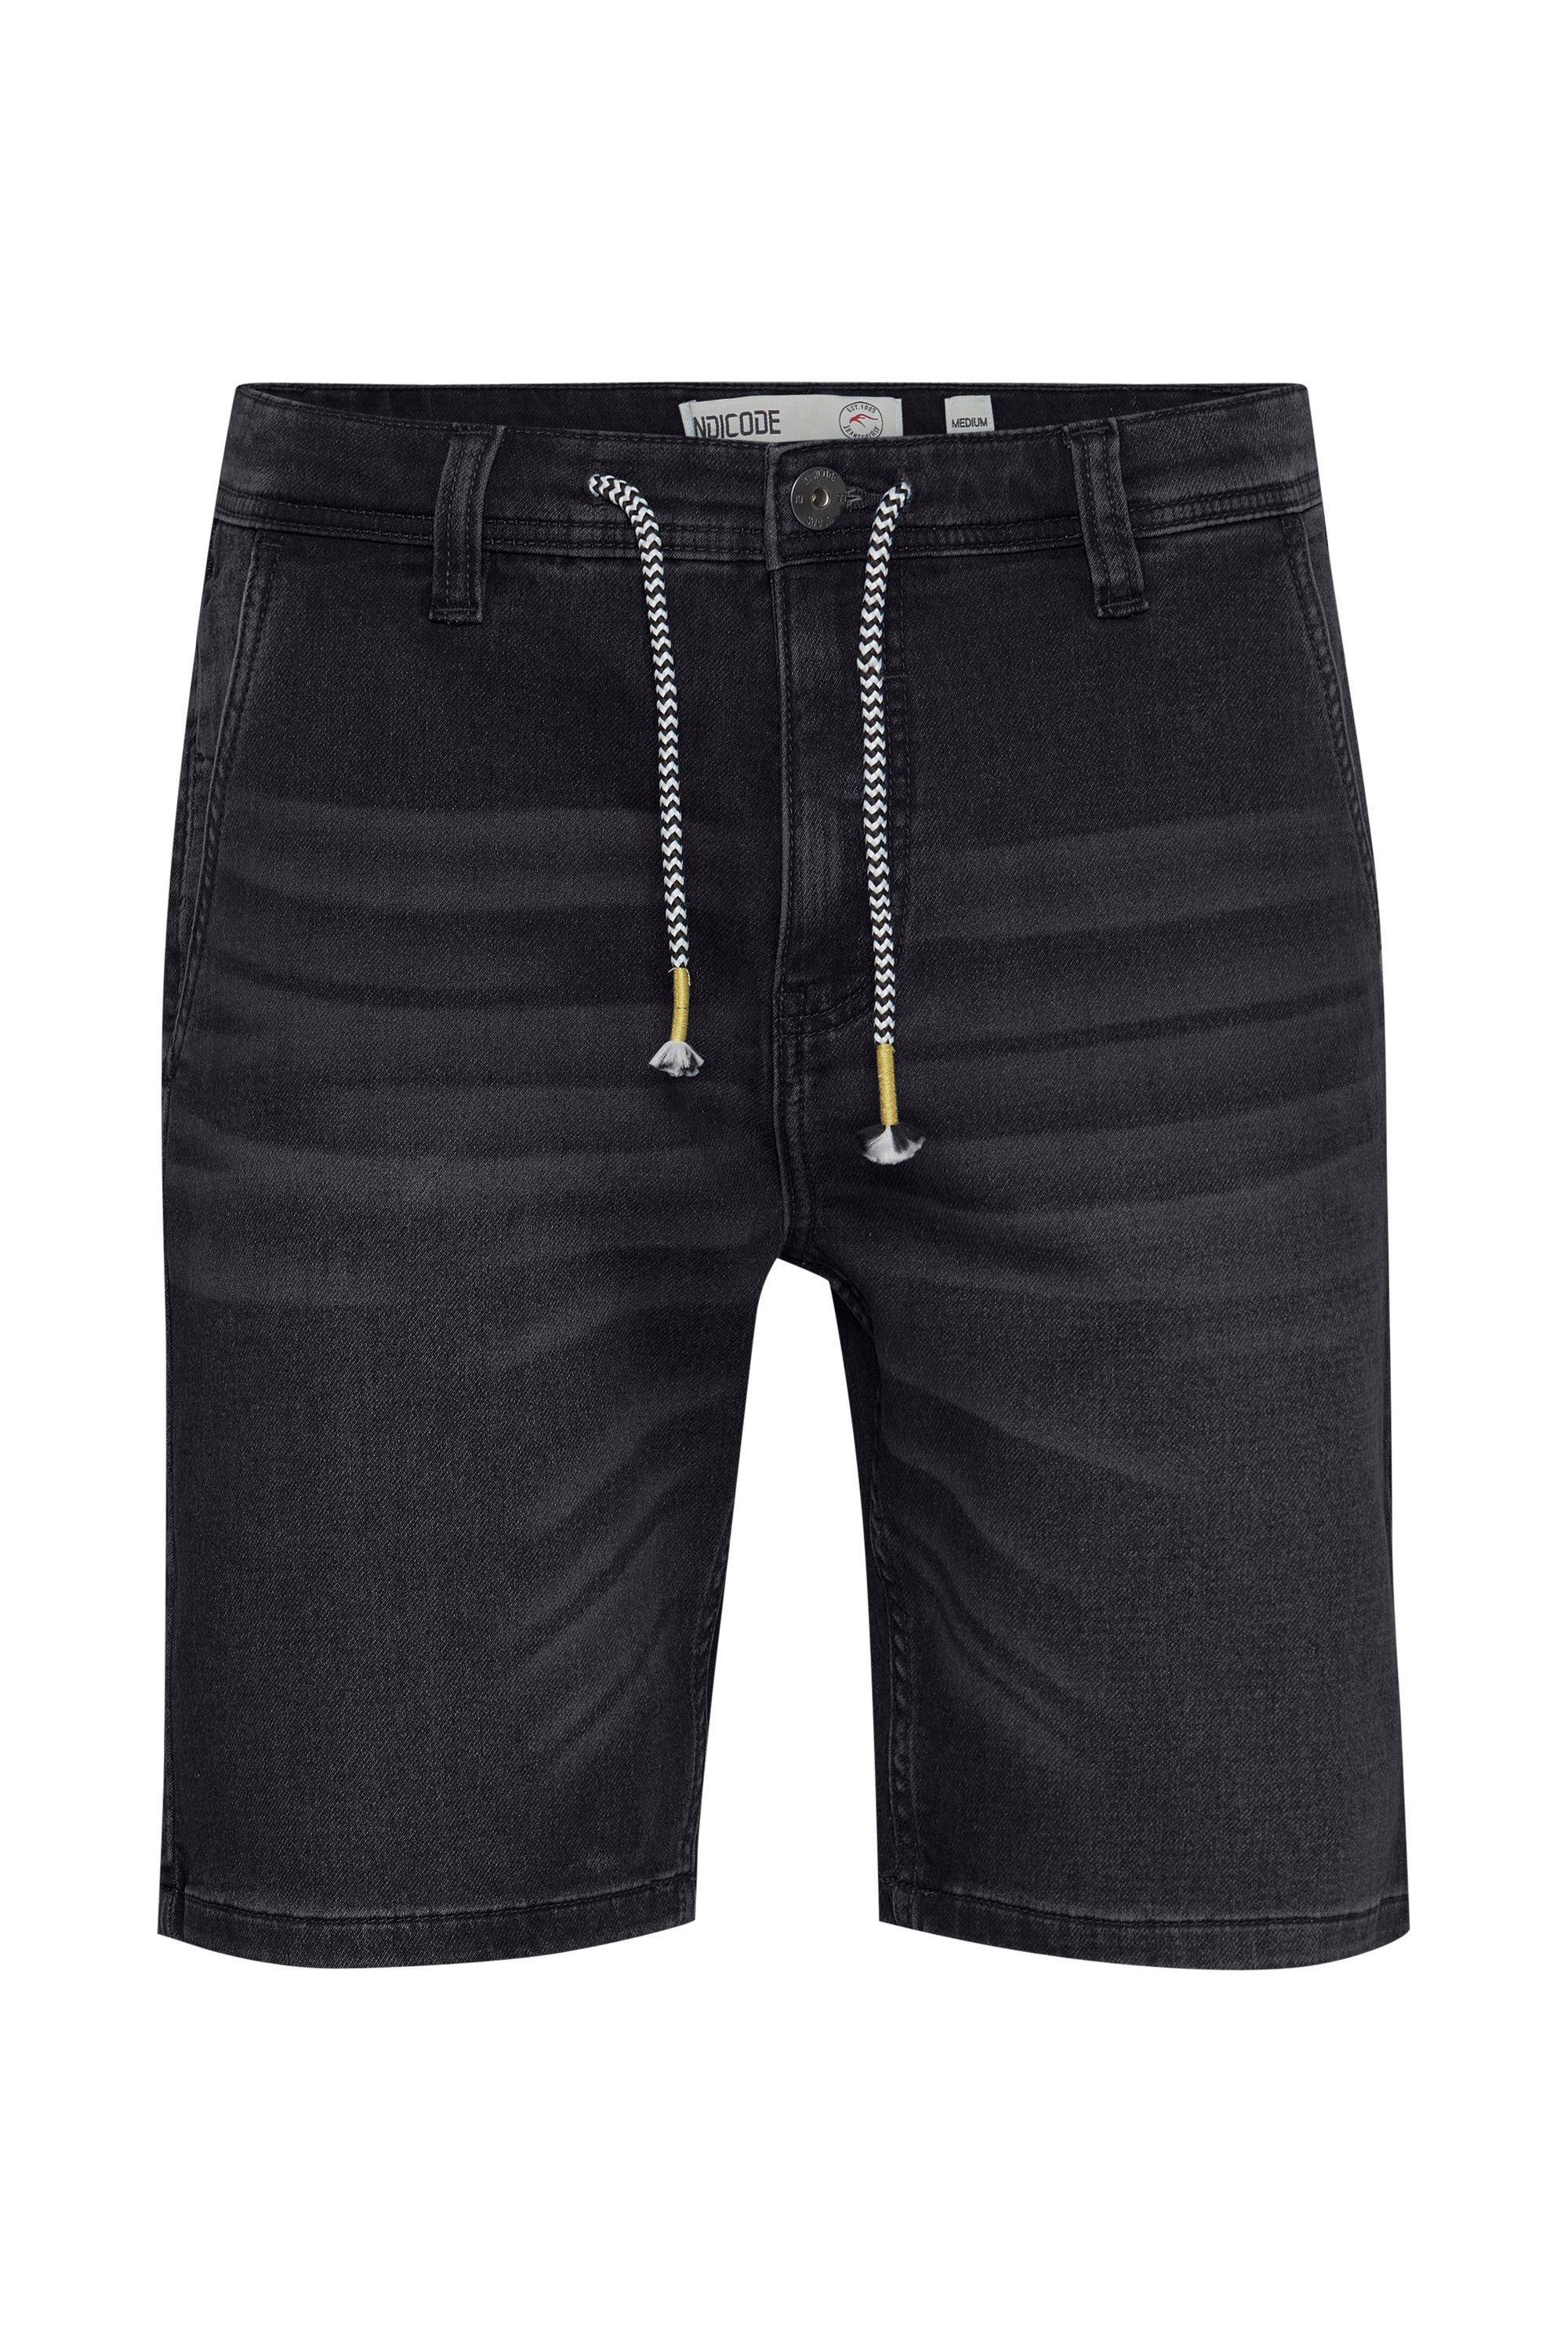 Indicode Vintage IDGodo Black Shorts (992)